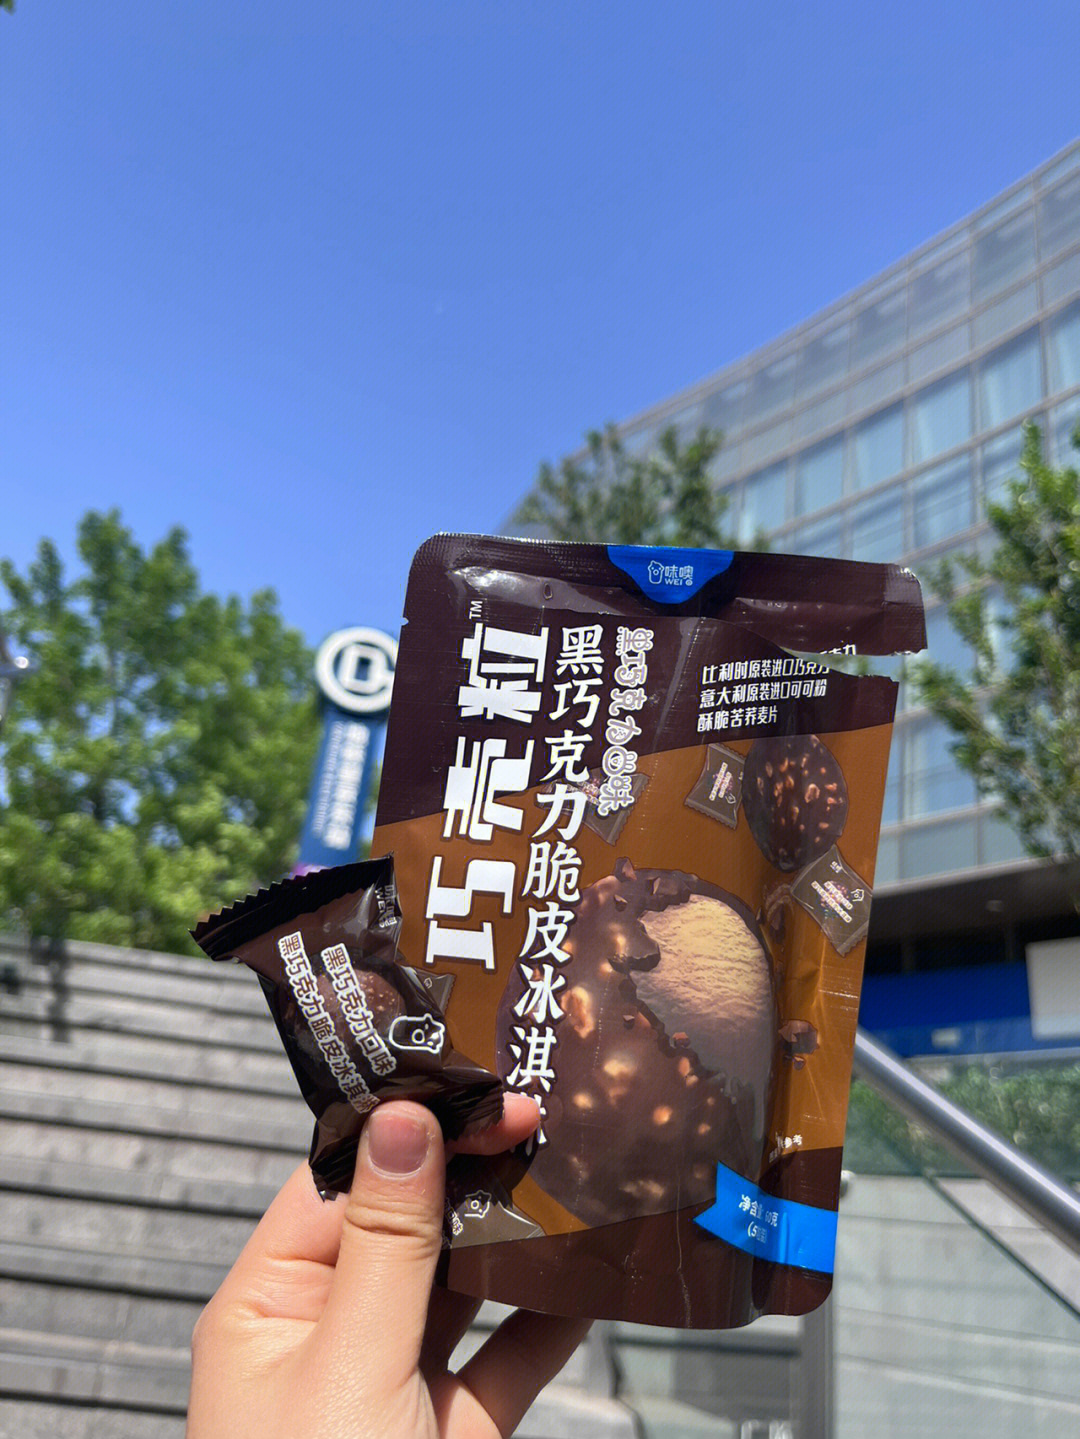 北京探店罗森新品巧克力脆皮冰淇淋